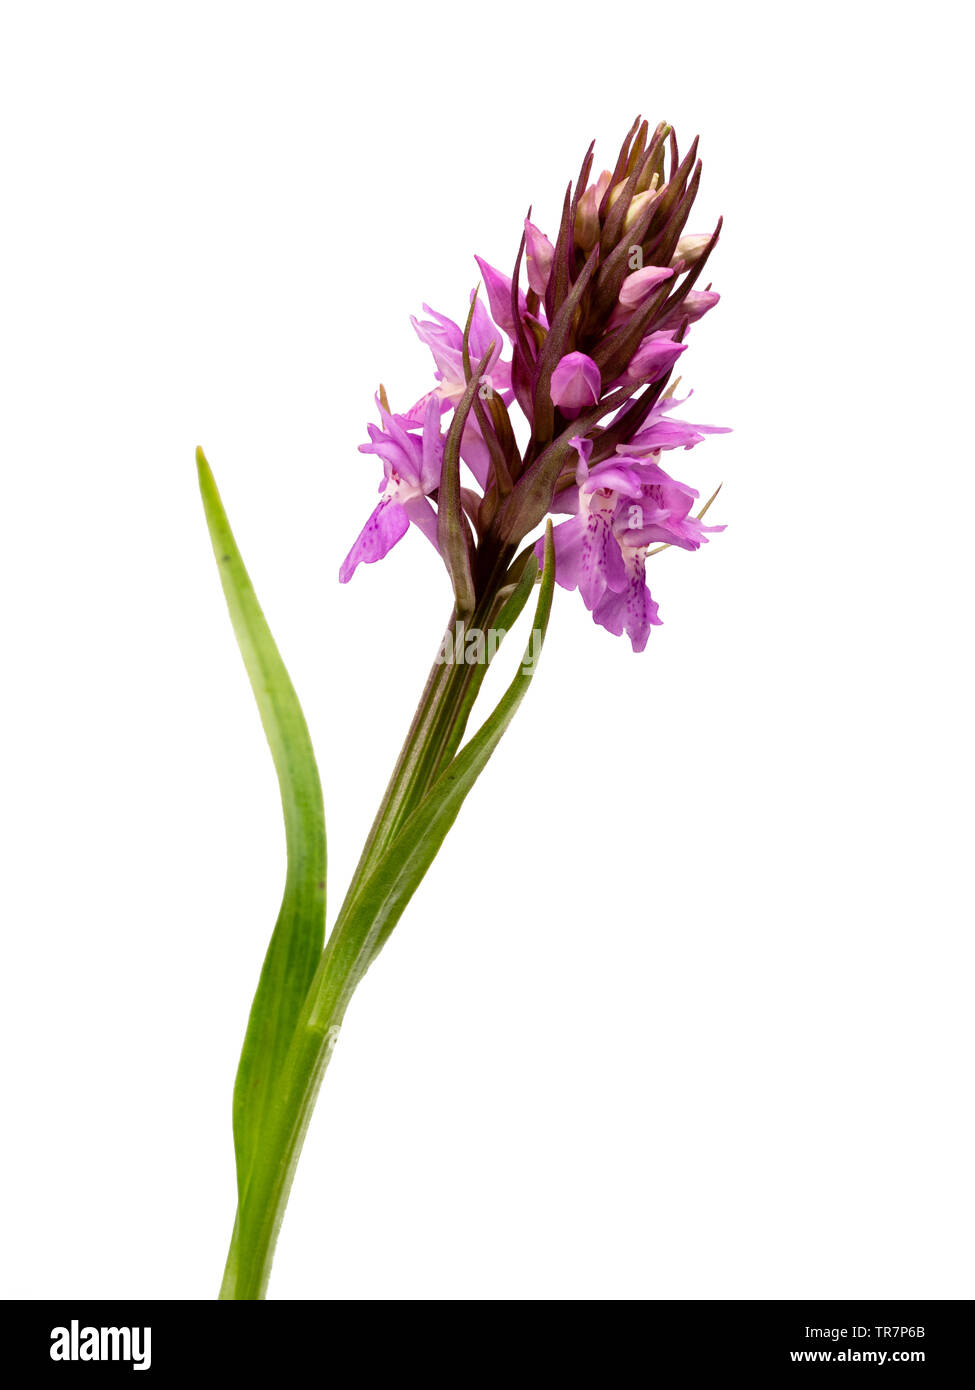 A principios de verano flores nativas del Reino Unido lanza wildflower, Dactylorhiza praetermissa, la orquídea pantanosa meridional sobre un fondo blanco. Foto de stock